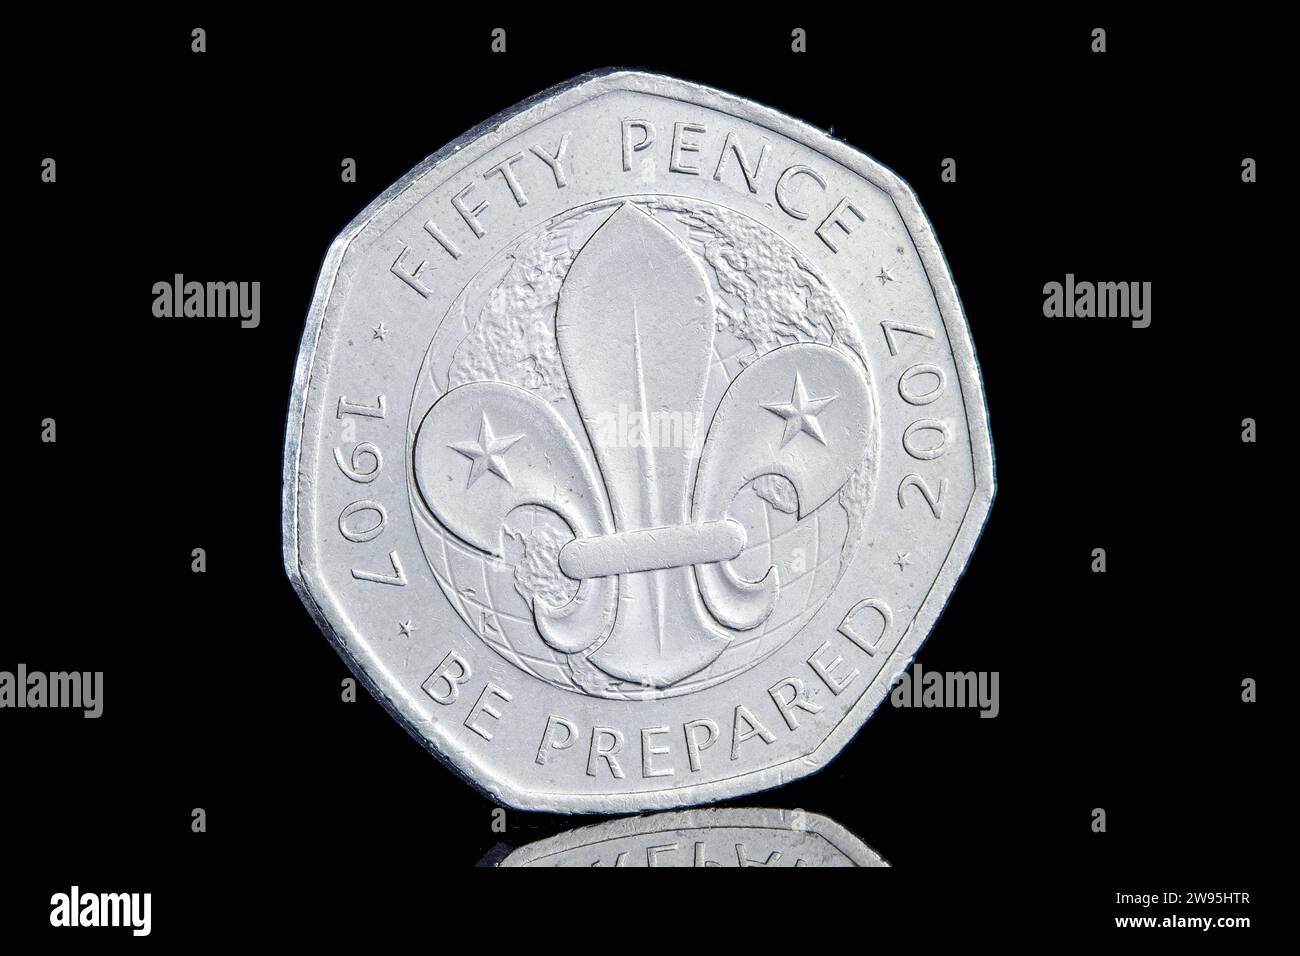 Un 2007 50p per commemorare i 100 anni del movimento scout. Il dritto presenta il quarto ritratto della regina Elisabetta II di Ian Rank Broadley Foto Stock